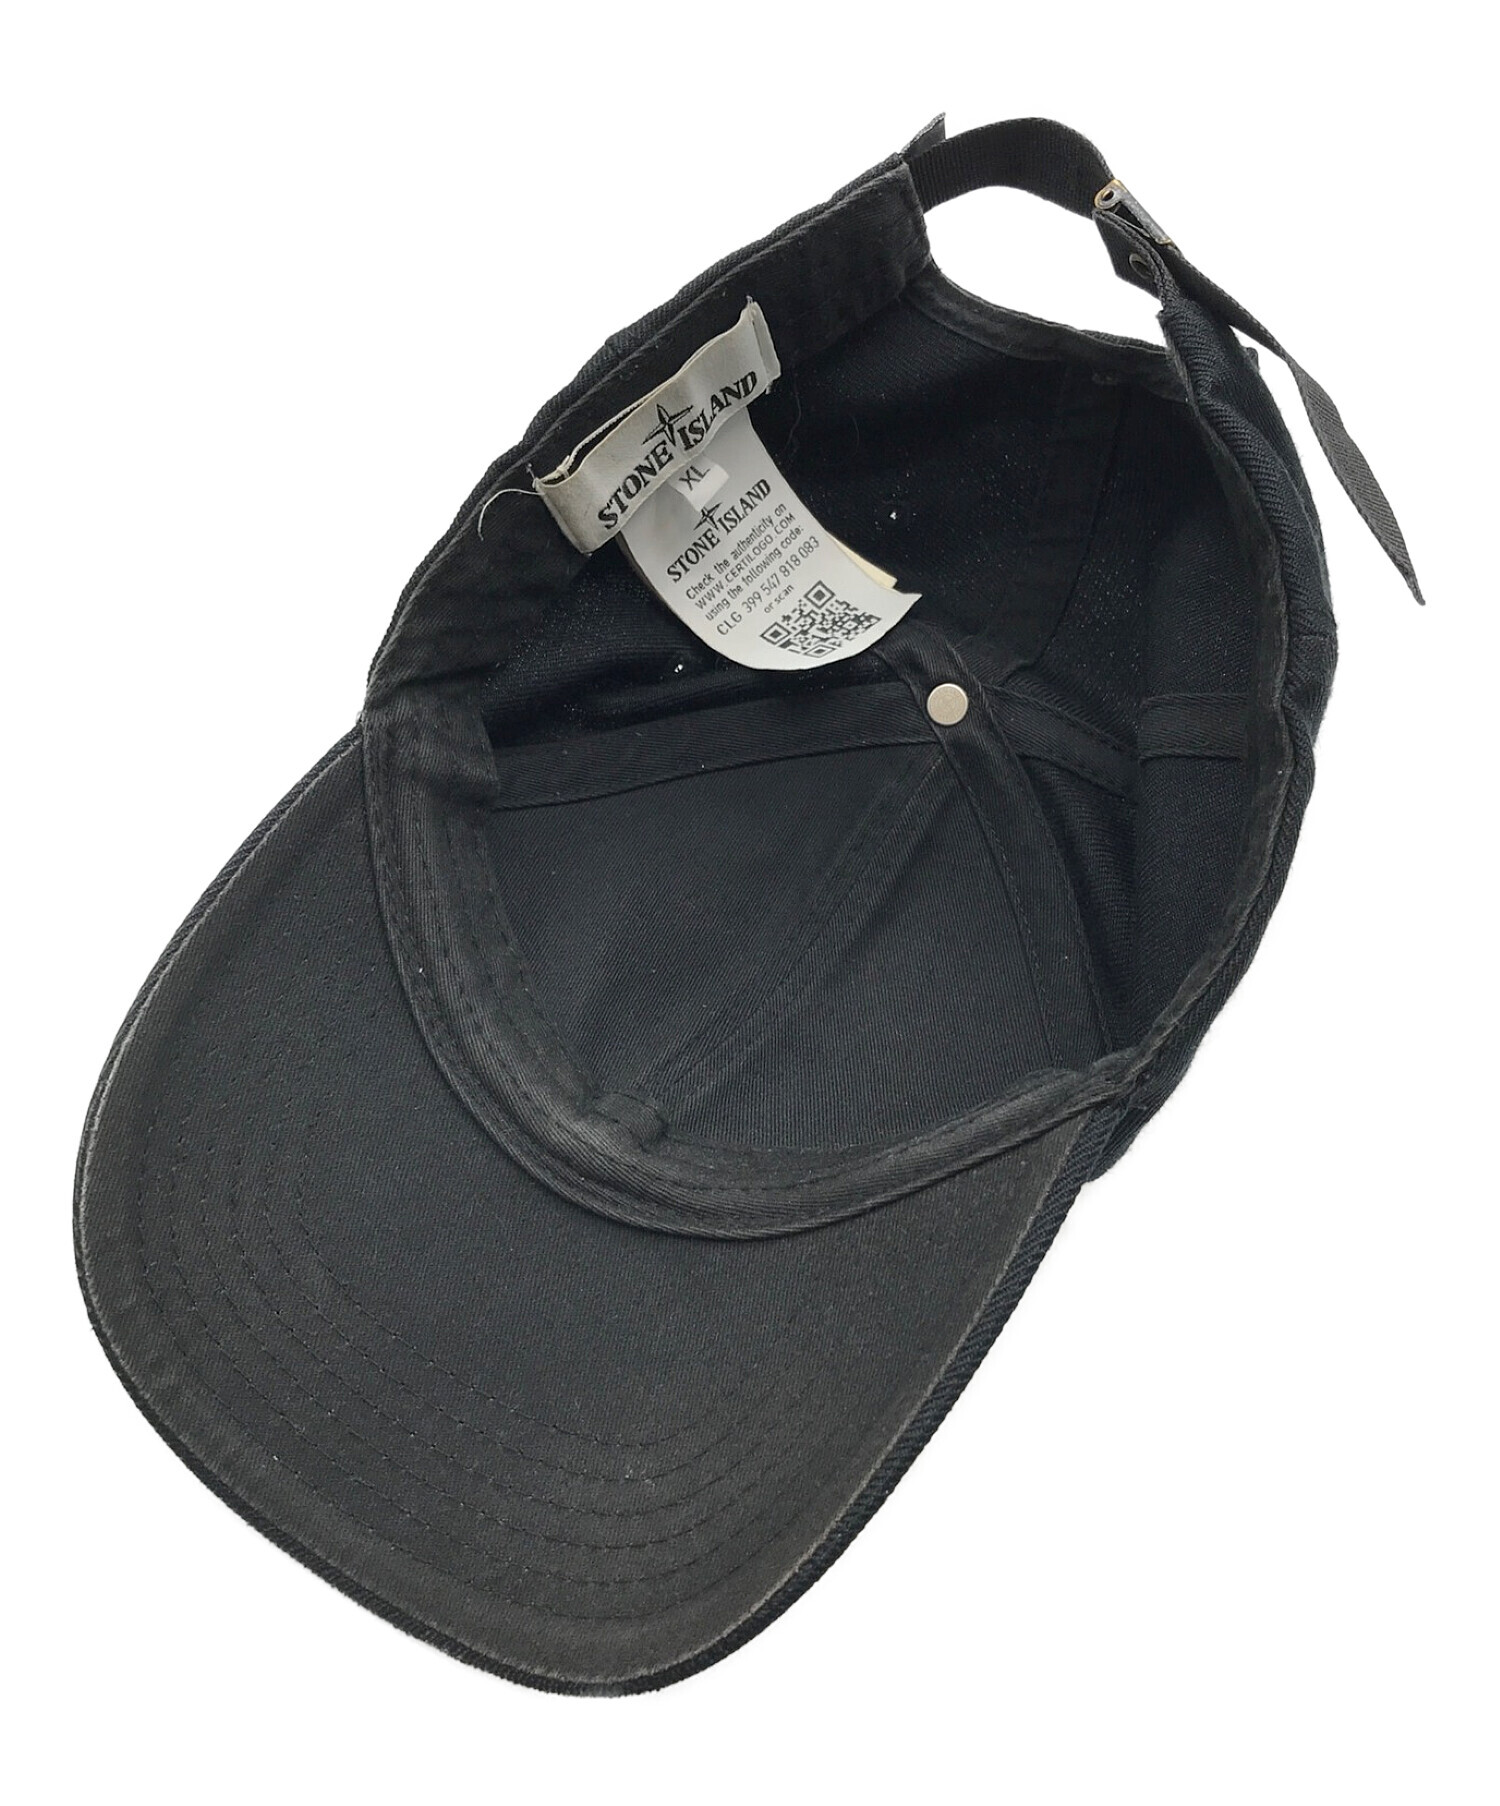 STONE ISLAND ストーンアイランド ロゴ  キャップ 帽子 ブラック